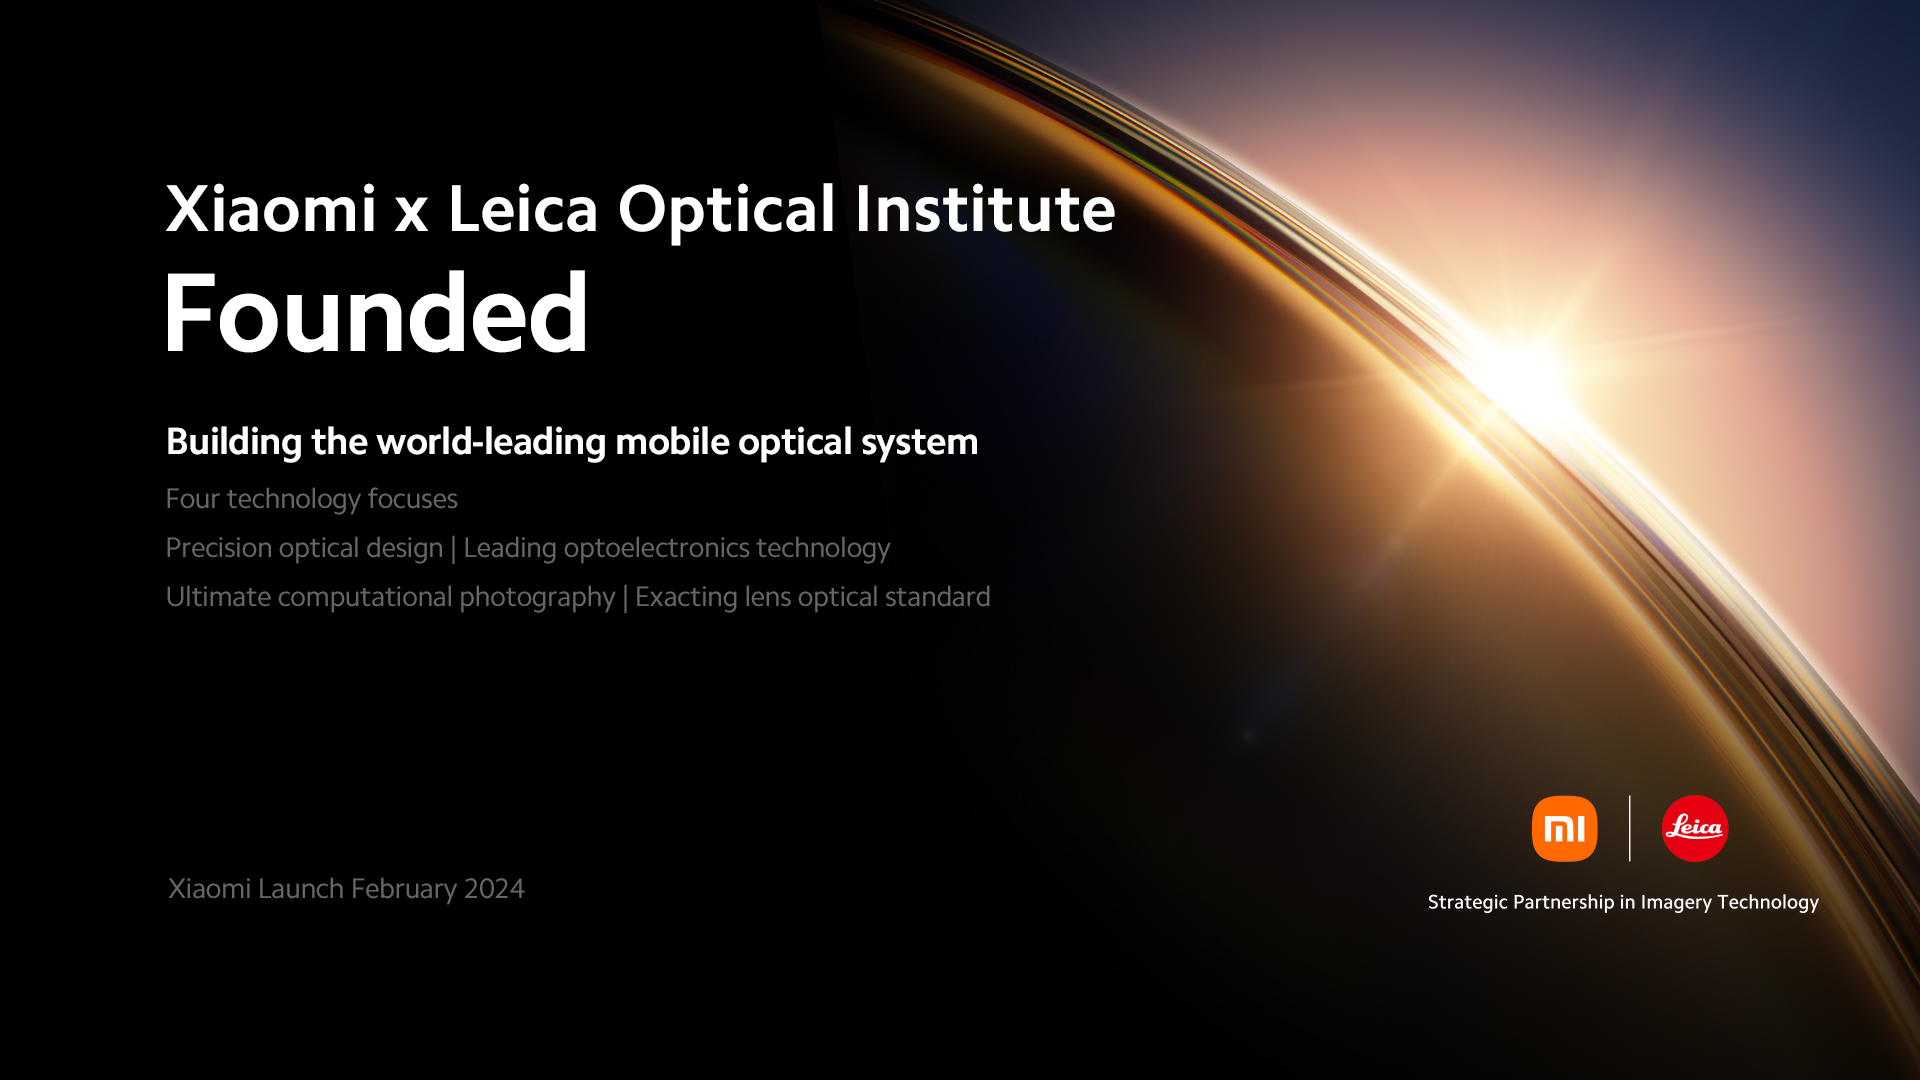 Xiaomi i Leica predstavljaju Optički institut Xiaomi x Leica